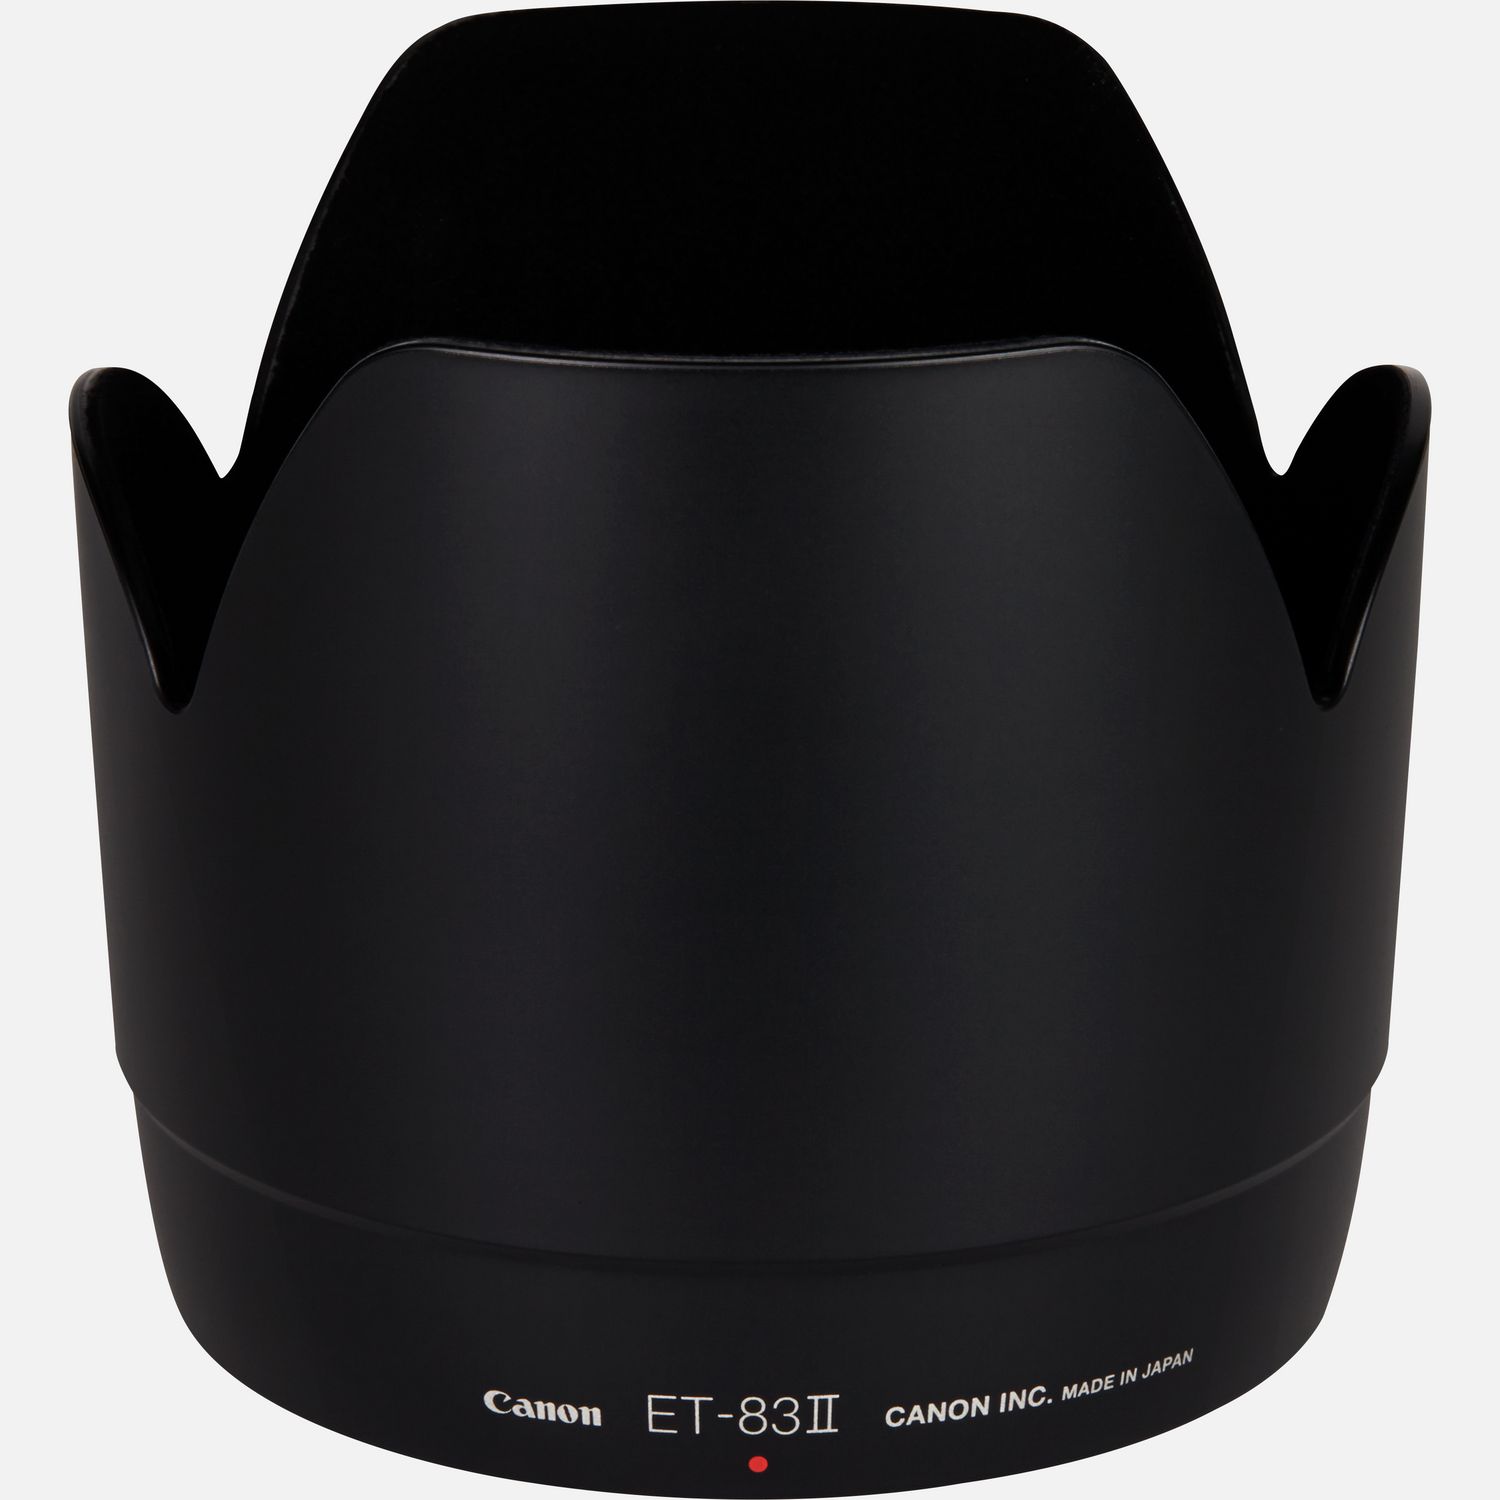 Passt auf das Objektiv EF 70-200mm 1:2,8L USM, reduziert Reflexionen, die durch direkt auf die Frontlinse auffallendes Licht hervorgerufen werden.